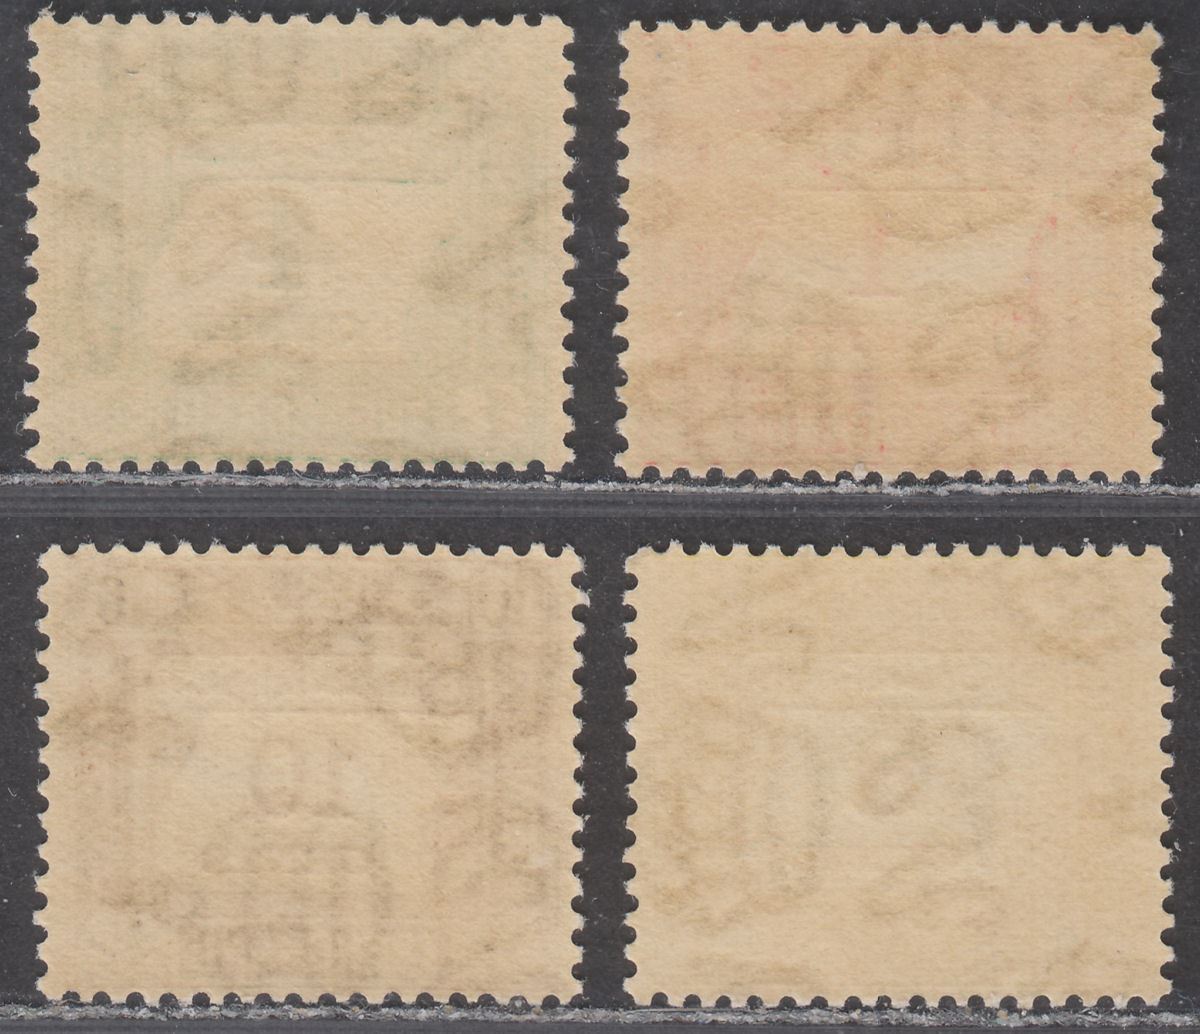 Malaya Trengganu 1937 Postage Due Set Mint SG D1-D4 cat £170